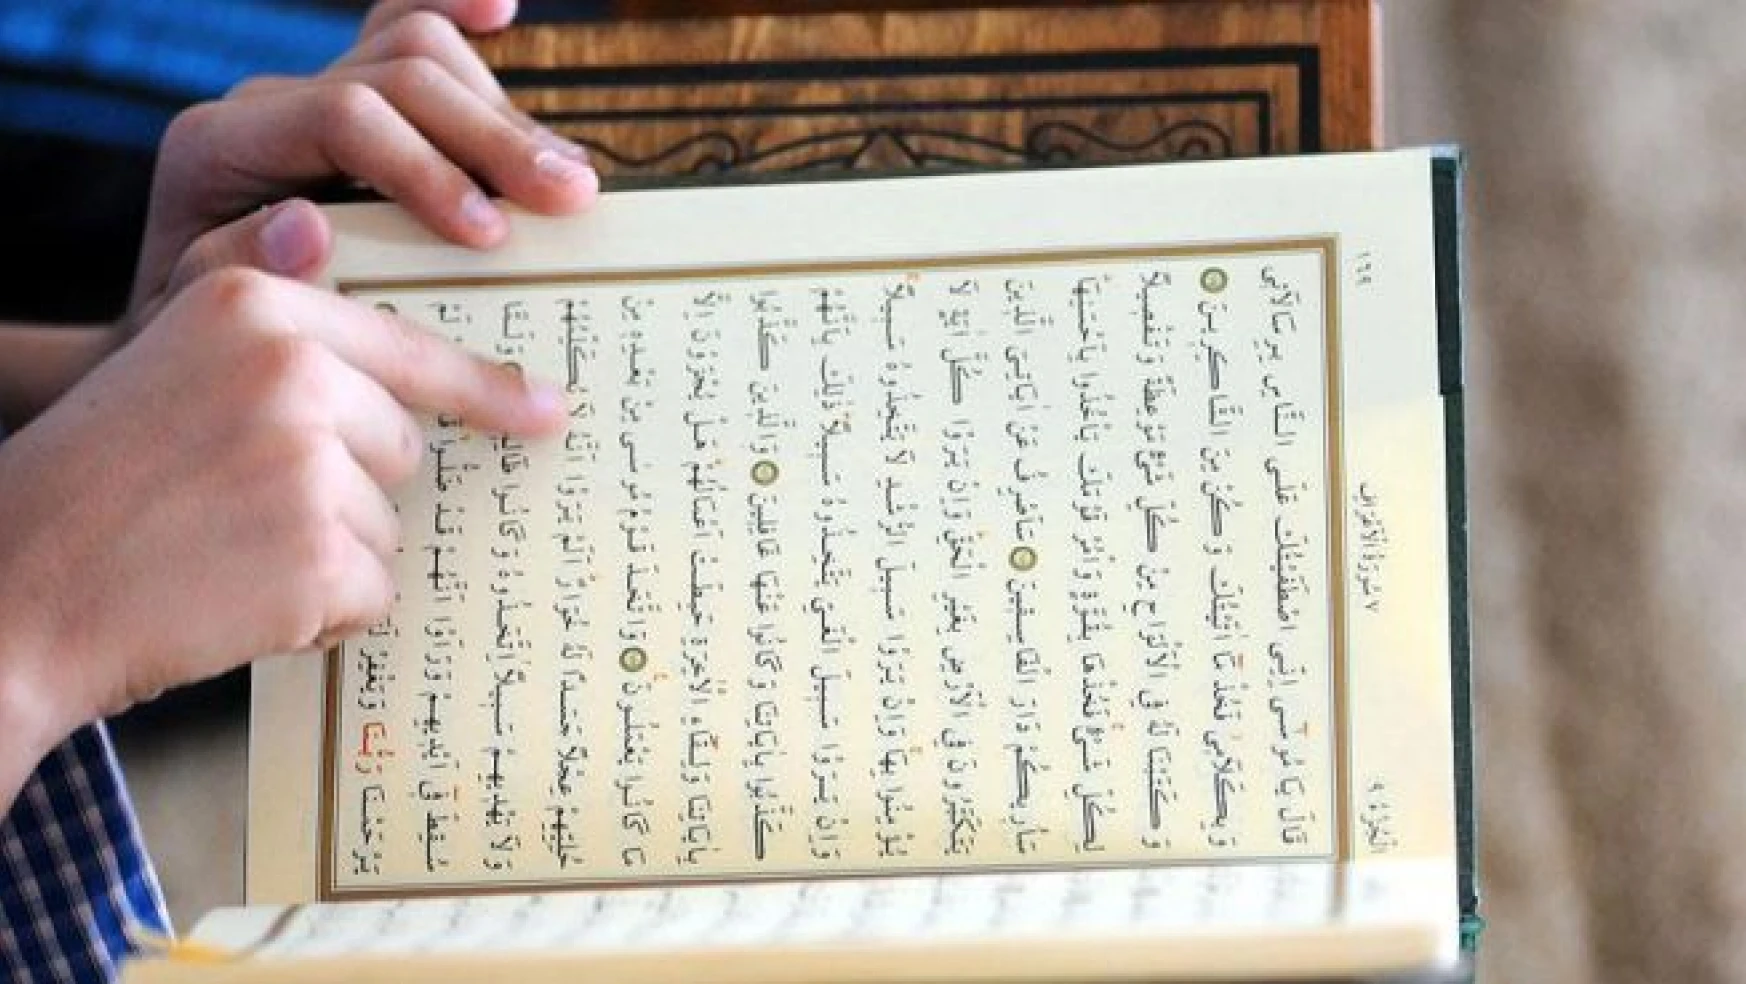 İsveç'te Kur'an-ı Kerim okuyan yolcuya suçlu muamelesi